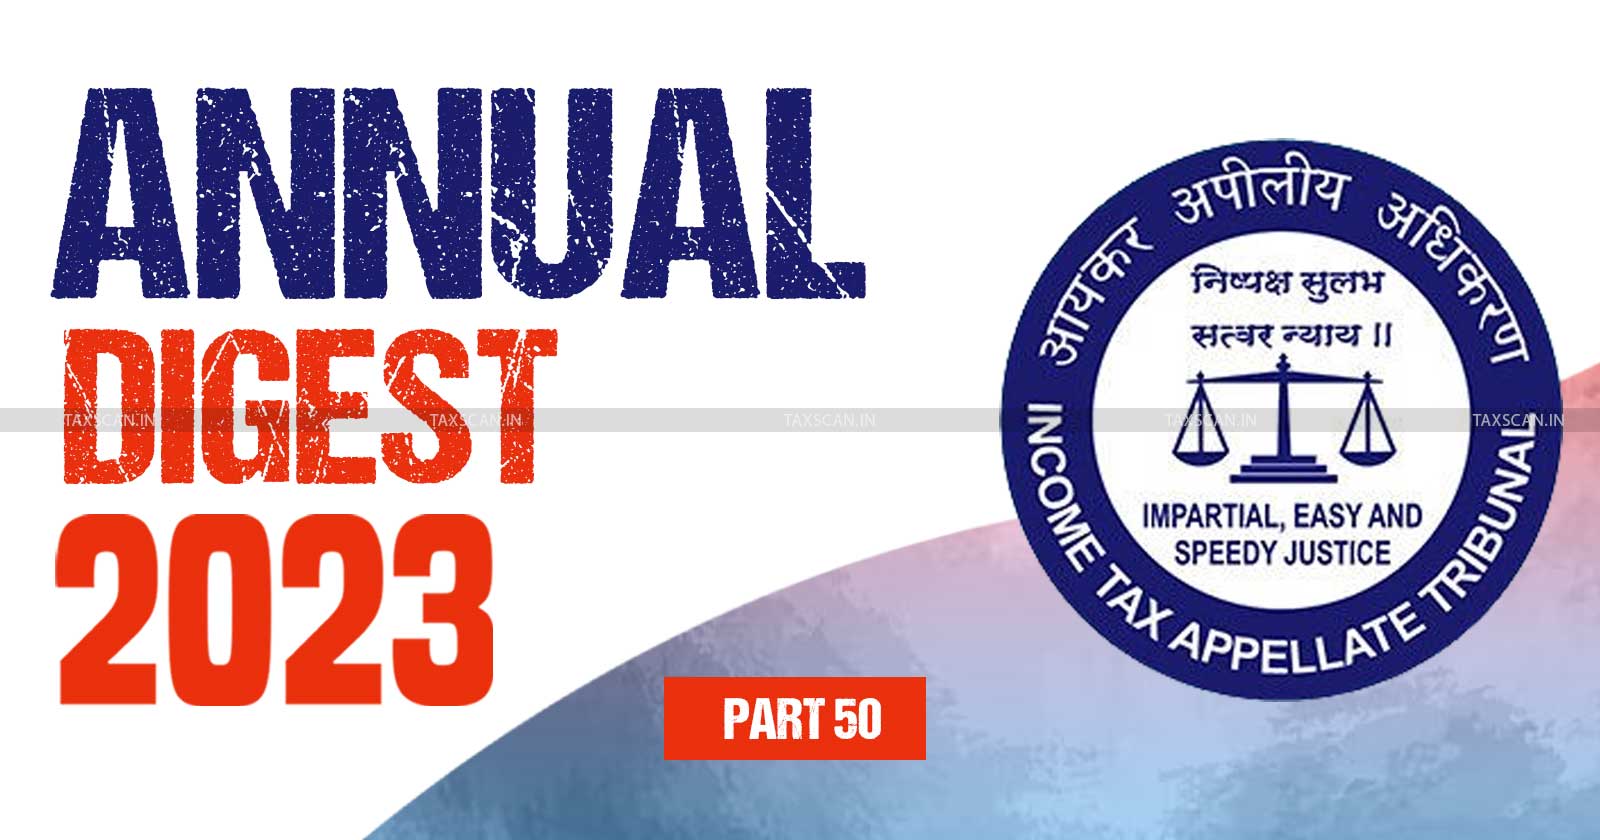 ITAT Annual Digest - Tax tribunal updates - Income Tax Appellate Tribunal analysis - Income tax updates 2023- ITAT - taxscan